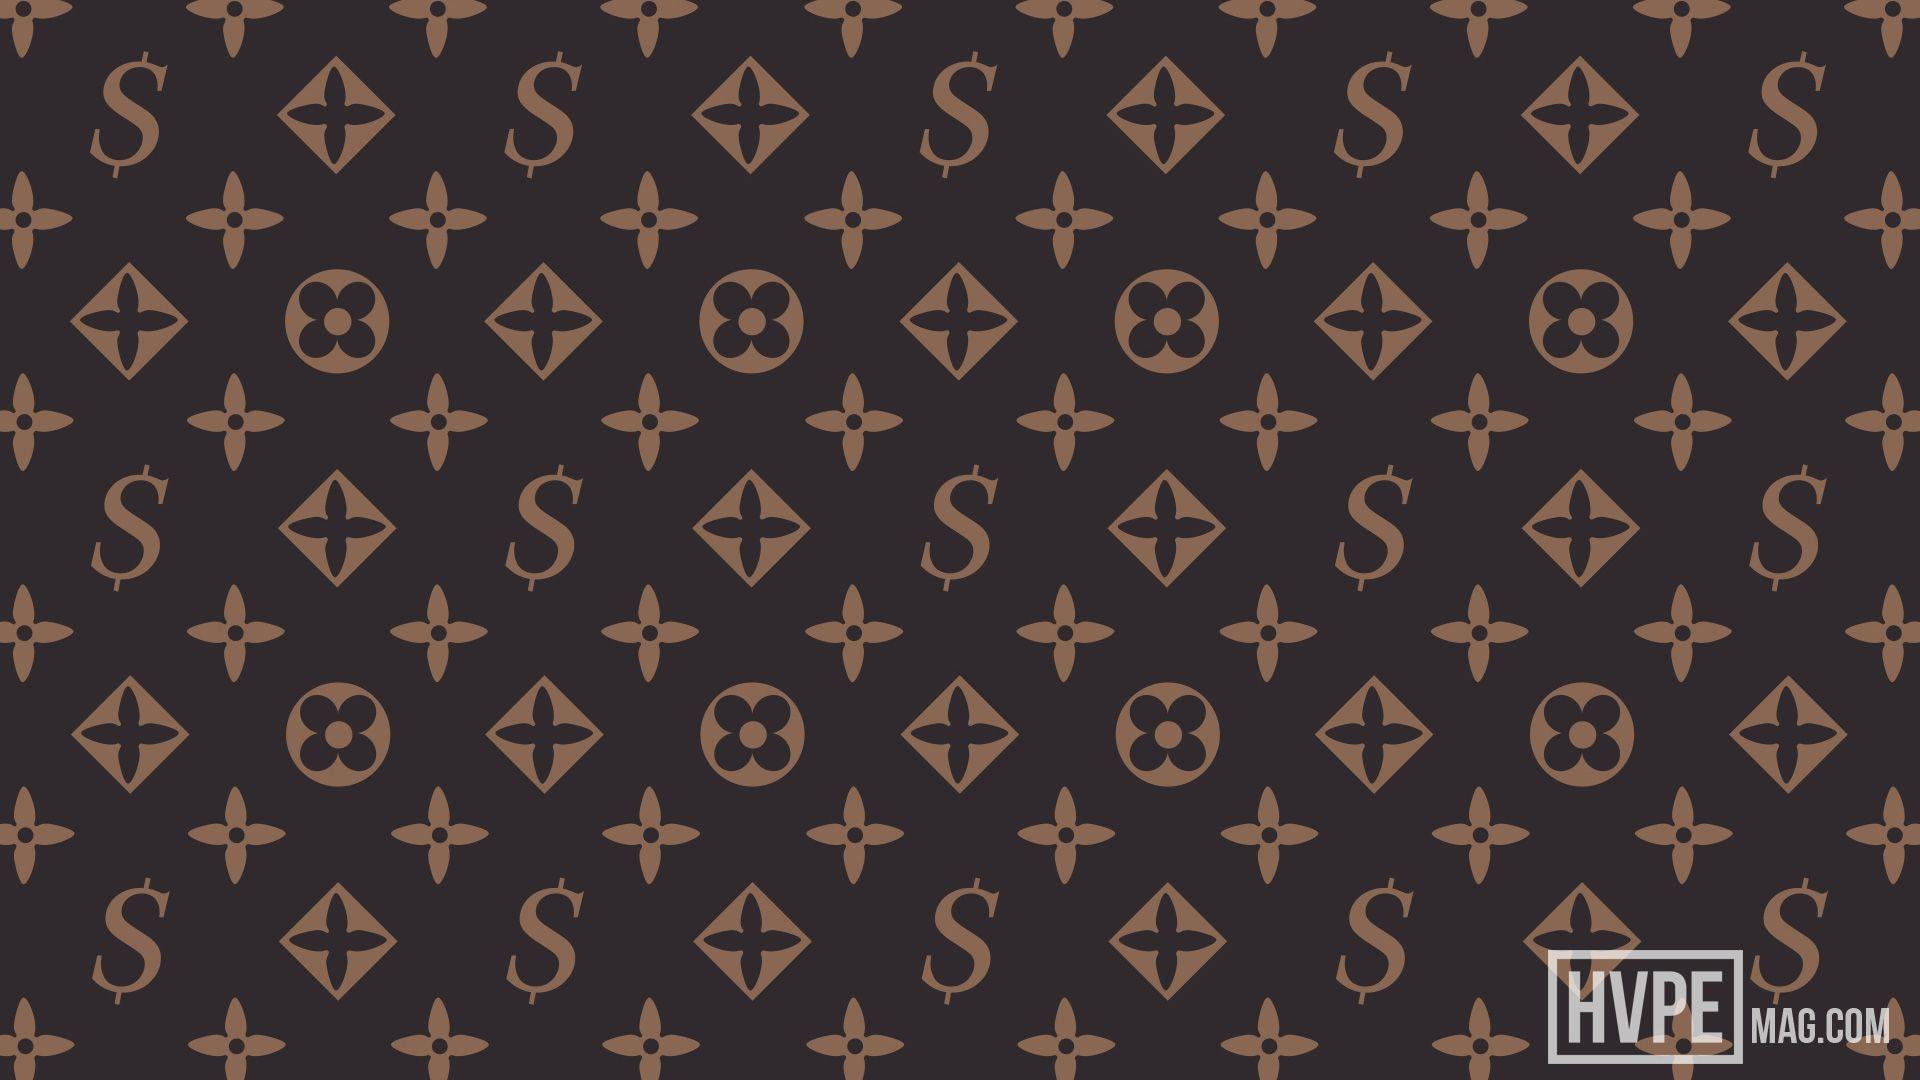 Free download 750x750px supreme louis vuitton wallpaper [750x750] for your  Desktop, Mobile & Tablet, Explore 24+ Supreme Louis Vuitton Wallpapers